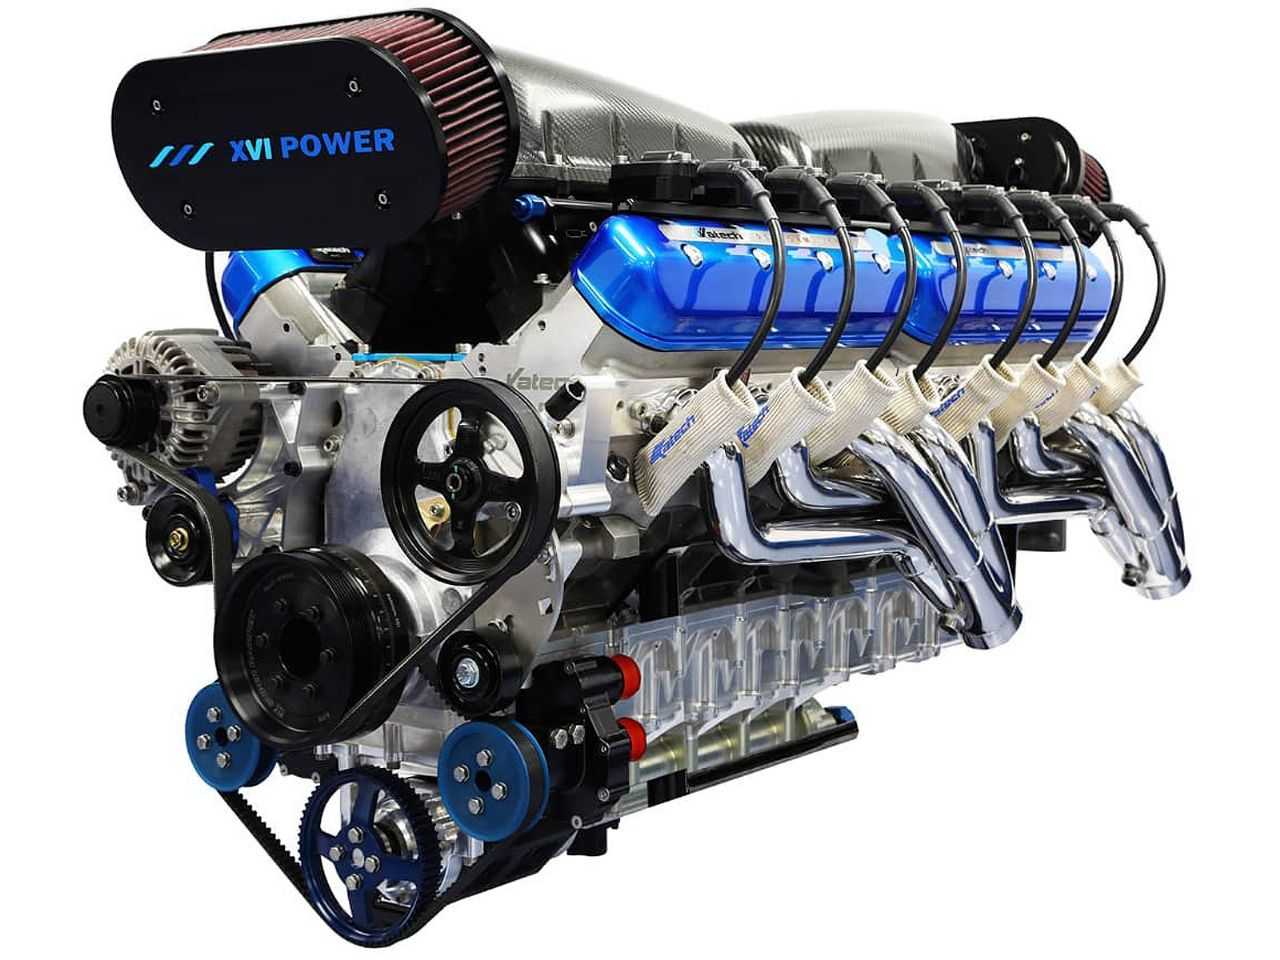 Acima o motor de 14 litros e 16 cilindros produzido pela Sixteen Power